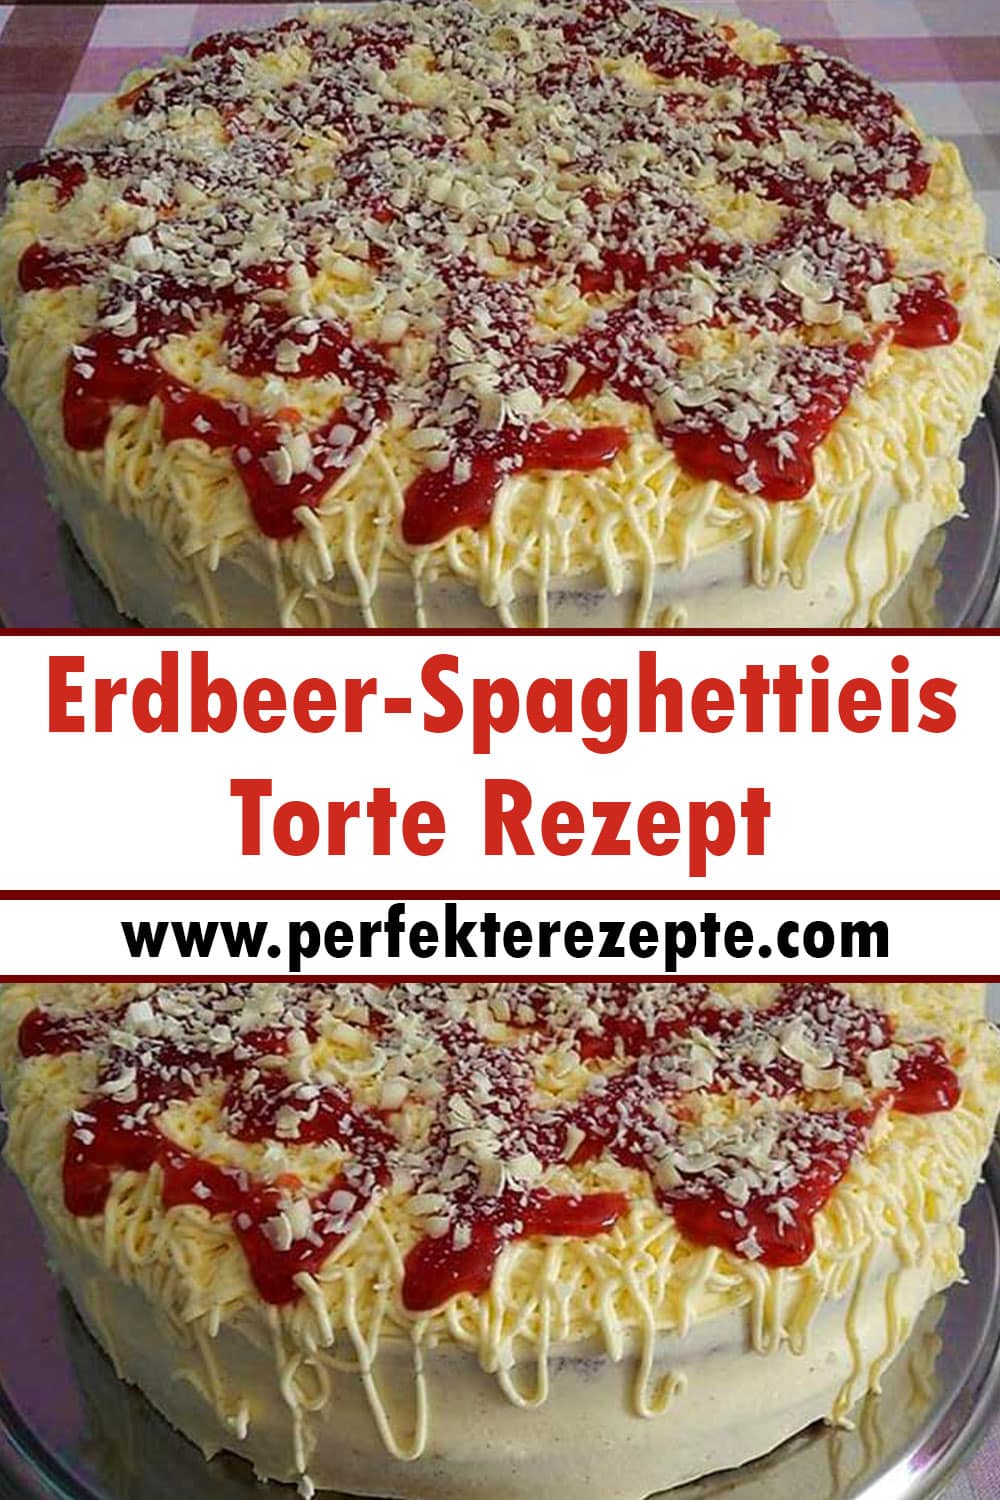 Erdbeer-Spaghettieis-Torte Rezept